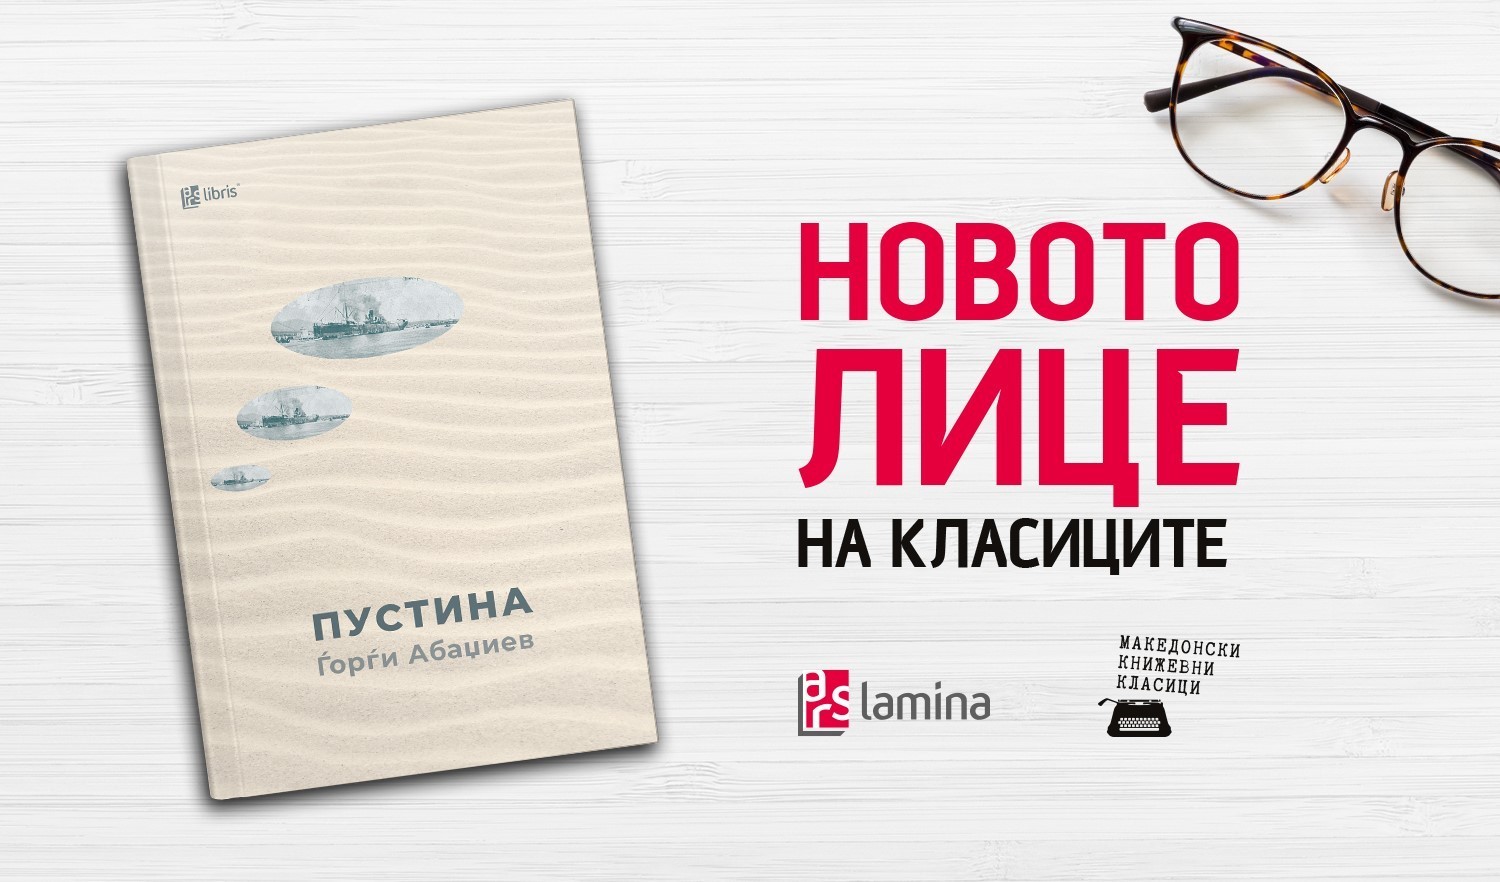 Онлајн-промоција на реобјавениот роман „Пустина“ од Ѓорѓи Абаџиев со корица изработена од неговата внука Искра Димитрова